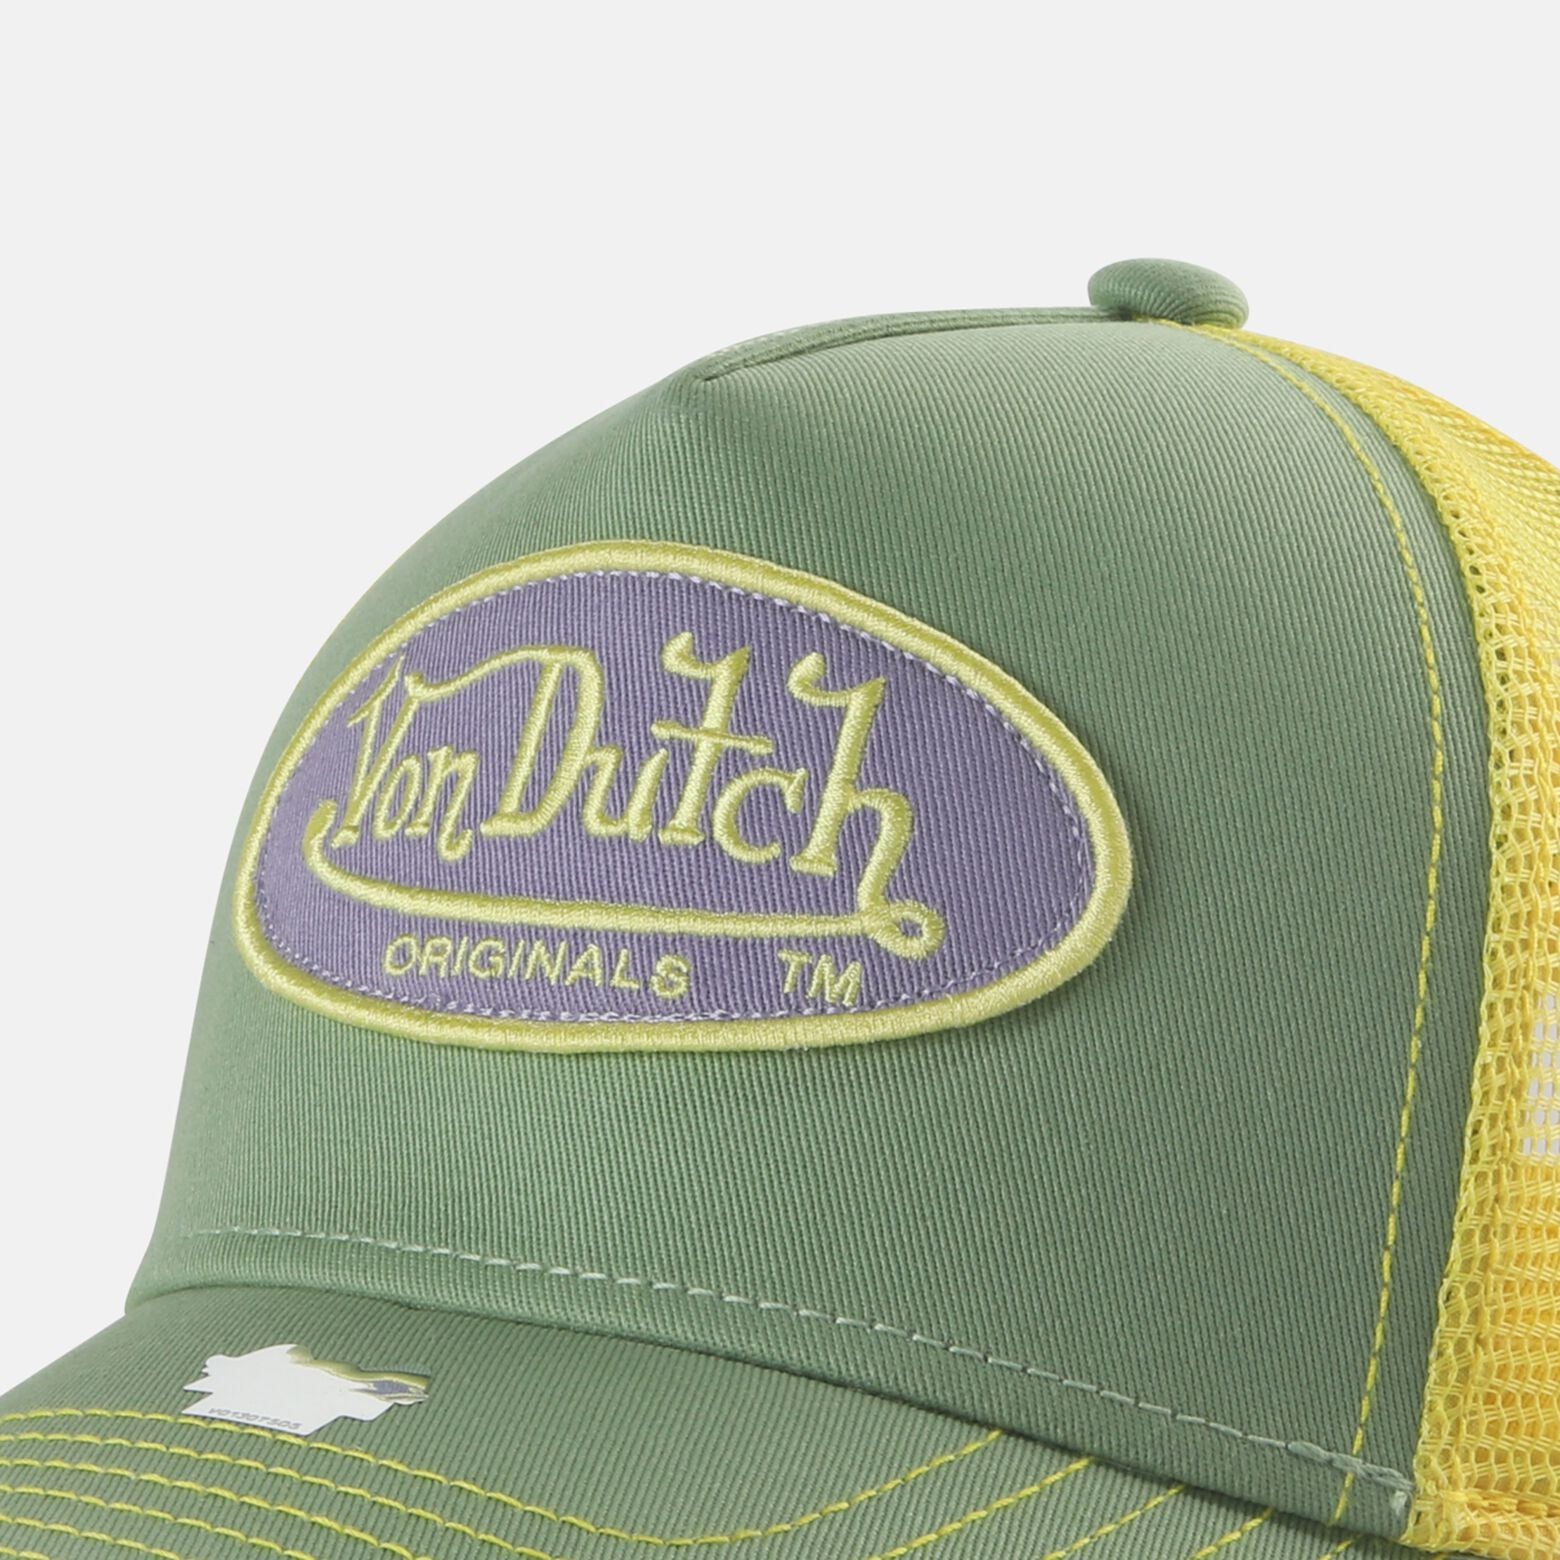 Von Dutch Boston Trucker Cap - Green/Yellow - Headz Up 